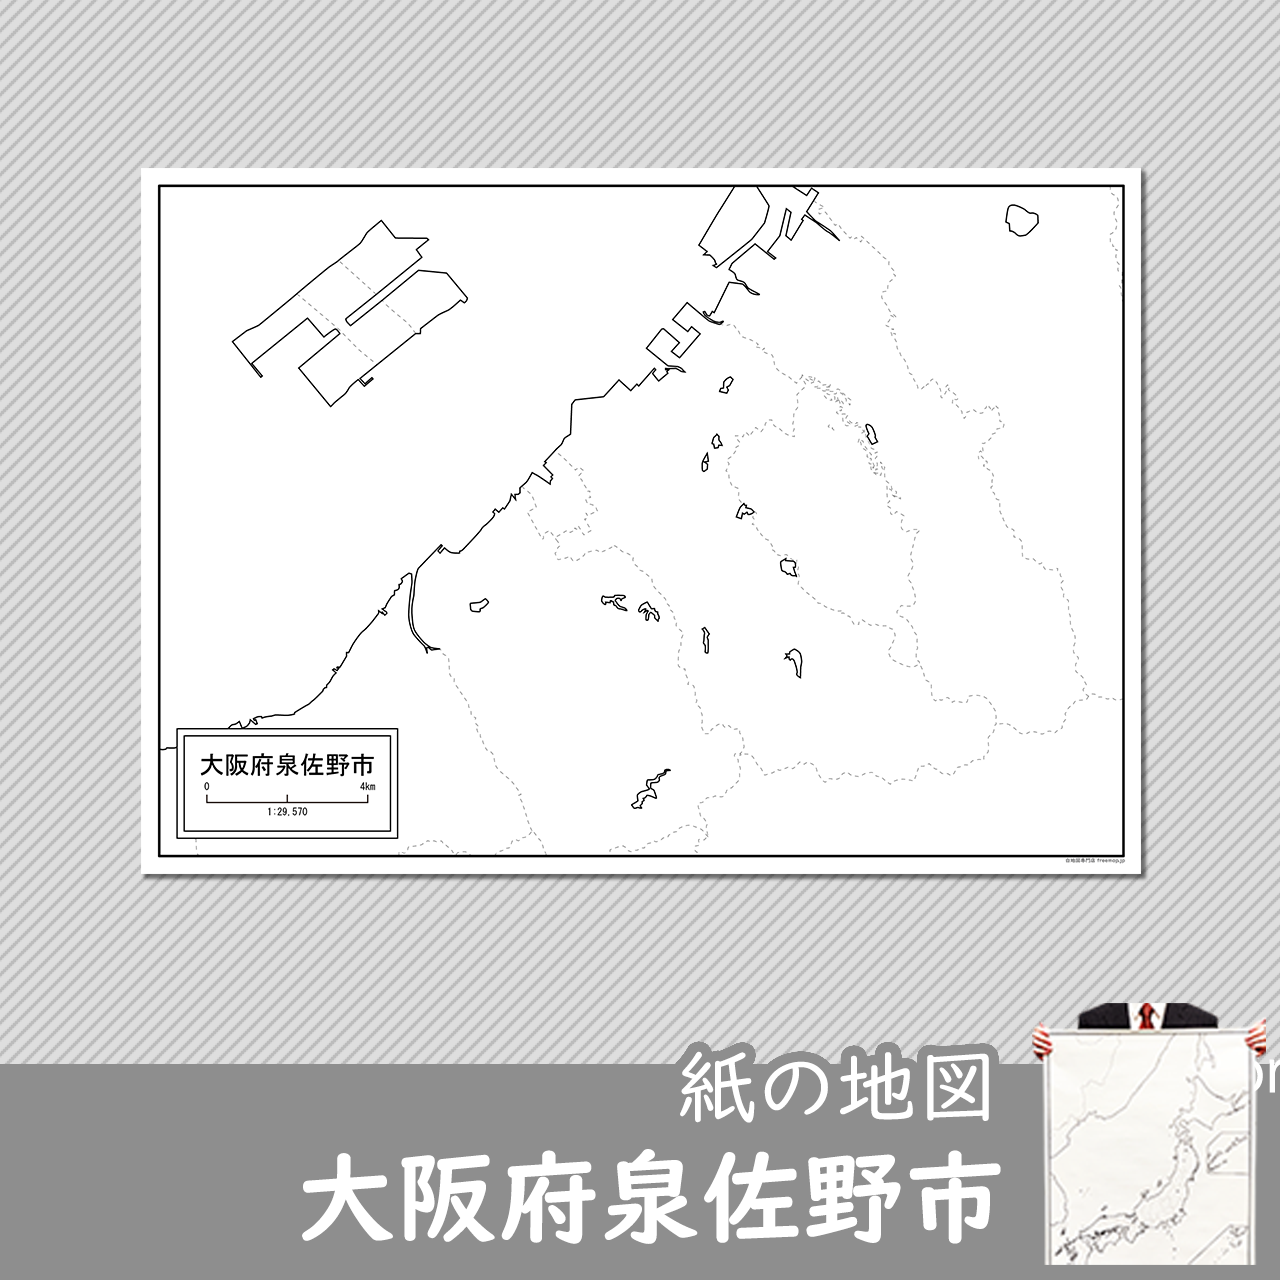 泉佐野市の紙の白地図のサムネイル